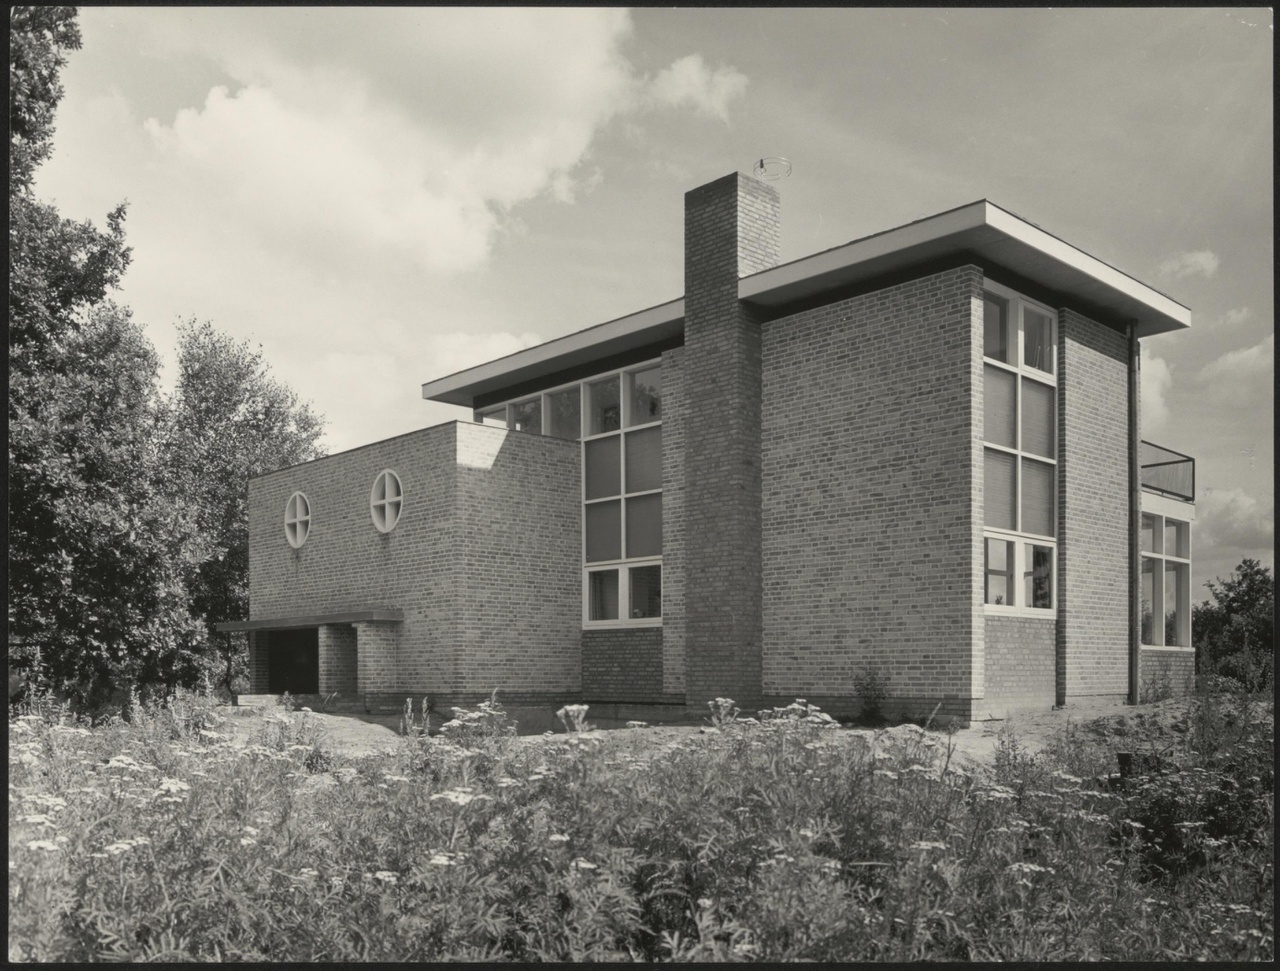 Afbeelding van woning Jansen, ca.1957, straatkant, schuin